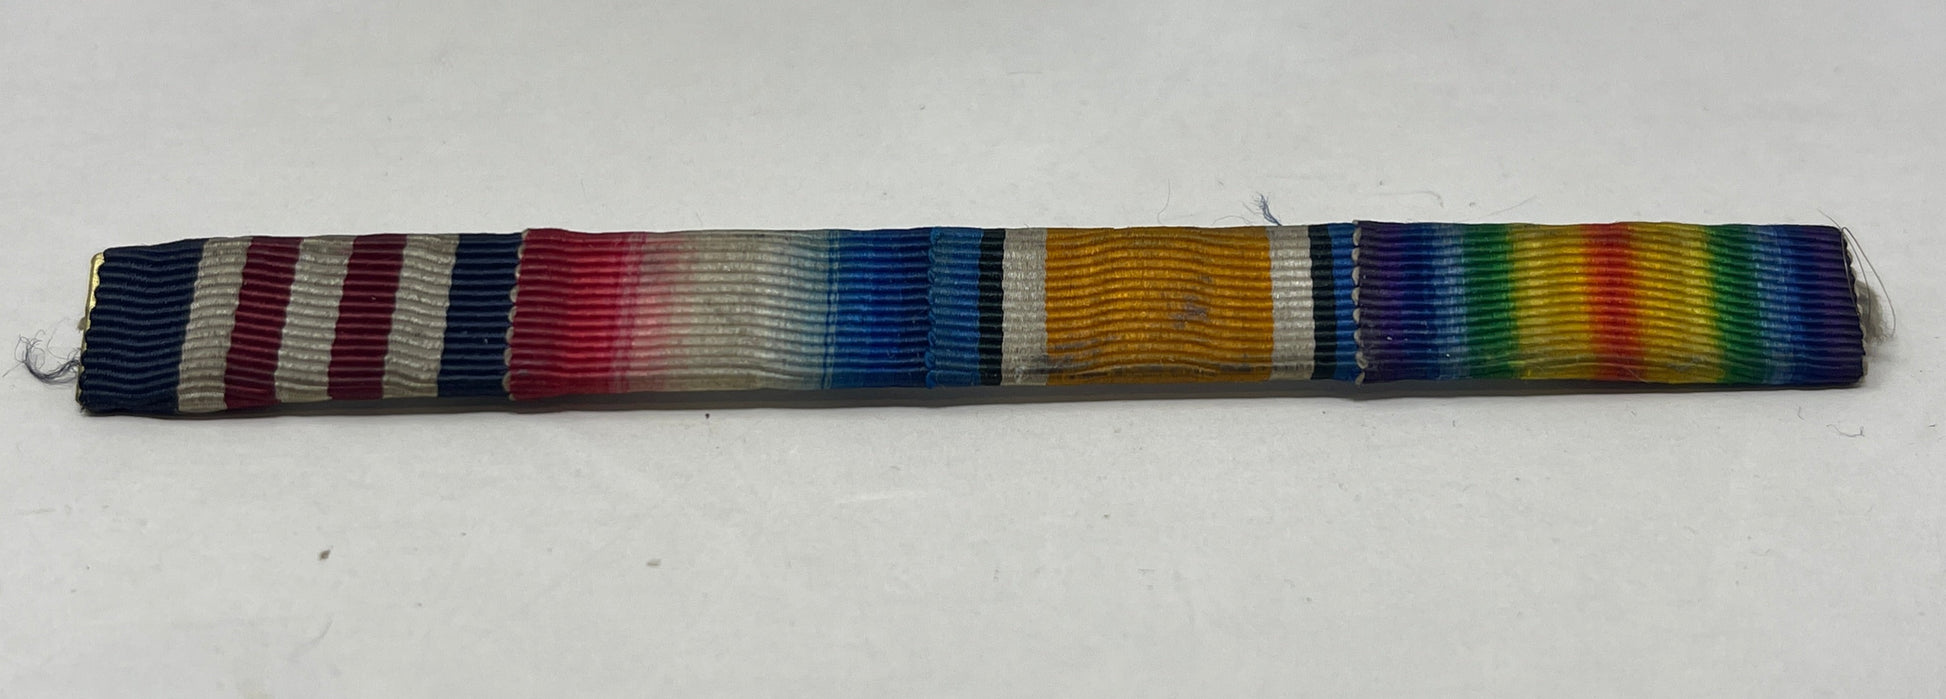 WW1 Medal Bar - MM, Star. BWM, Victory Medals